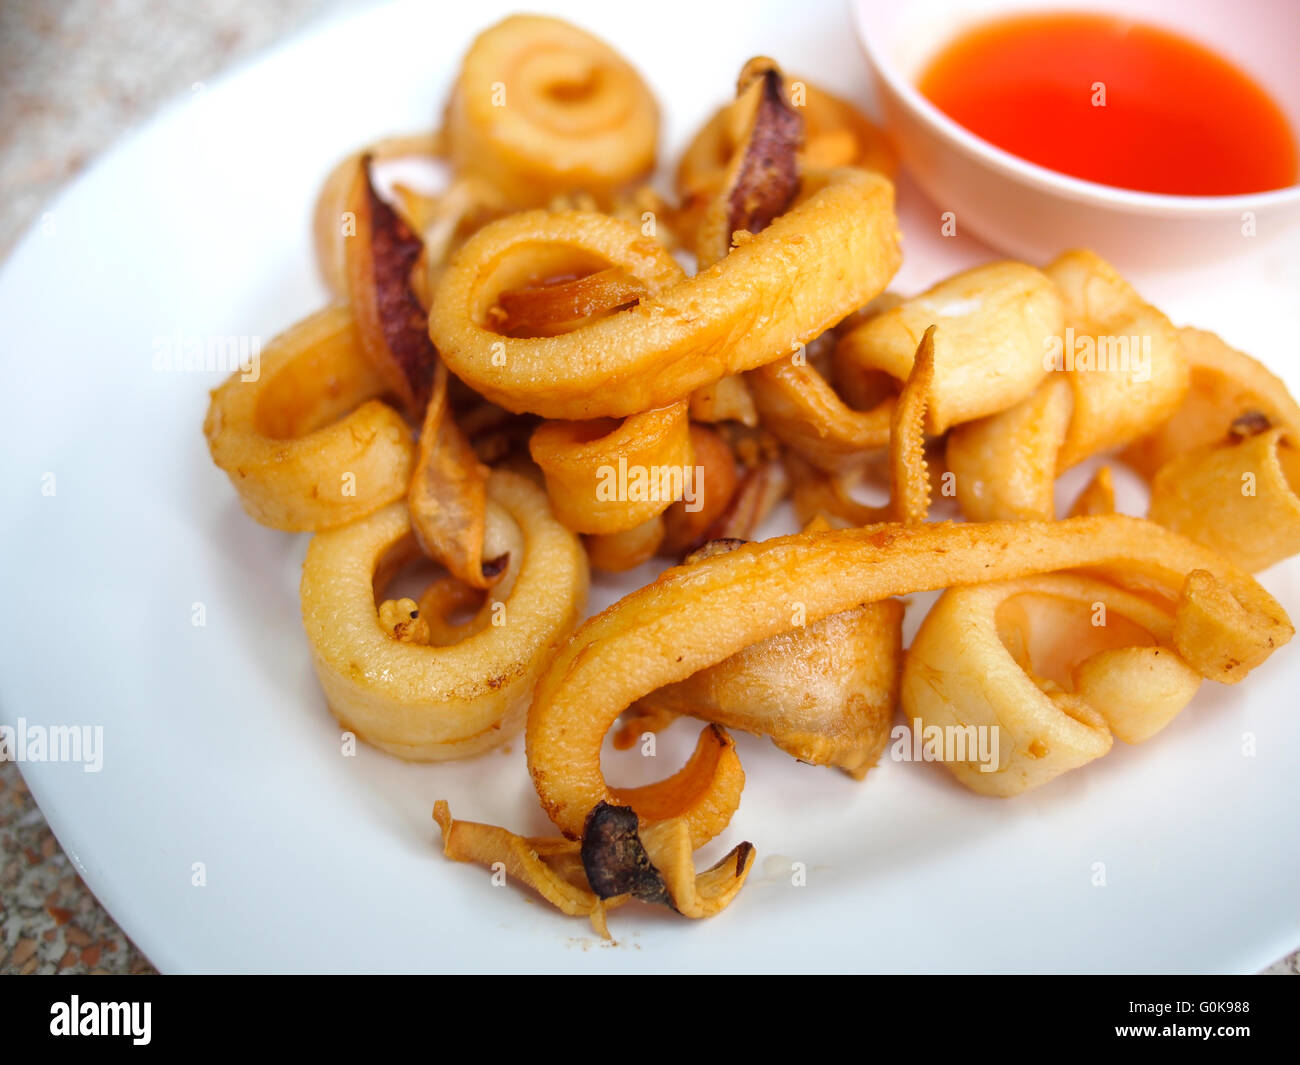 fried calamari appetizer with savory sauce Stock Photo